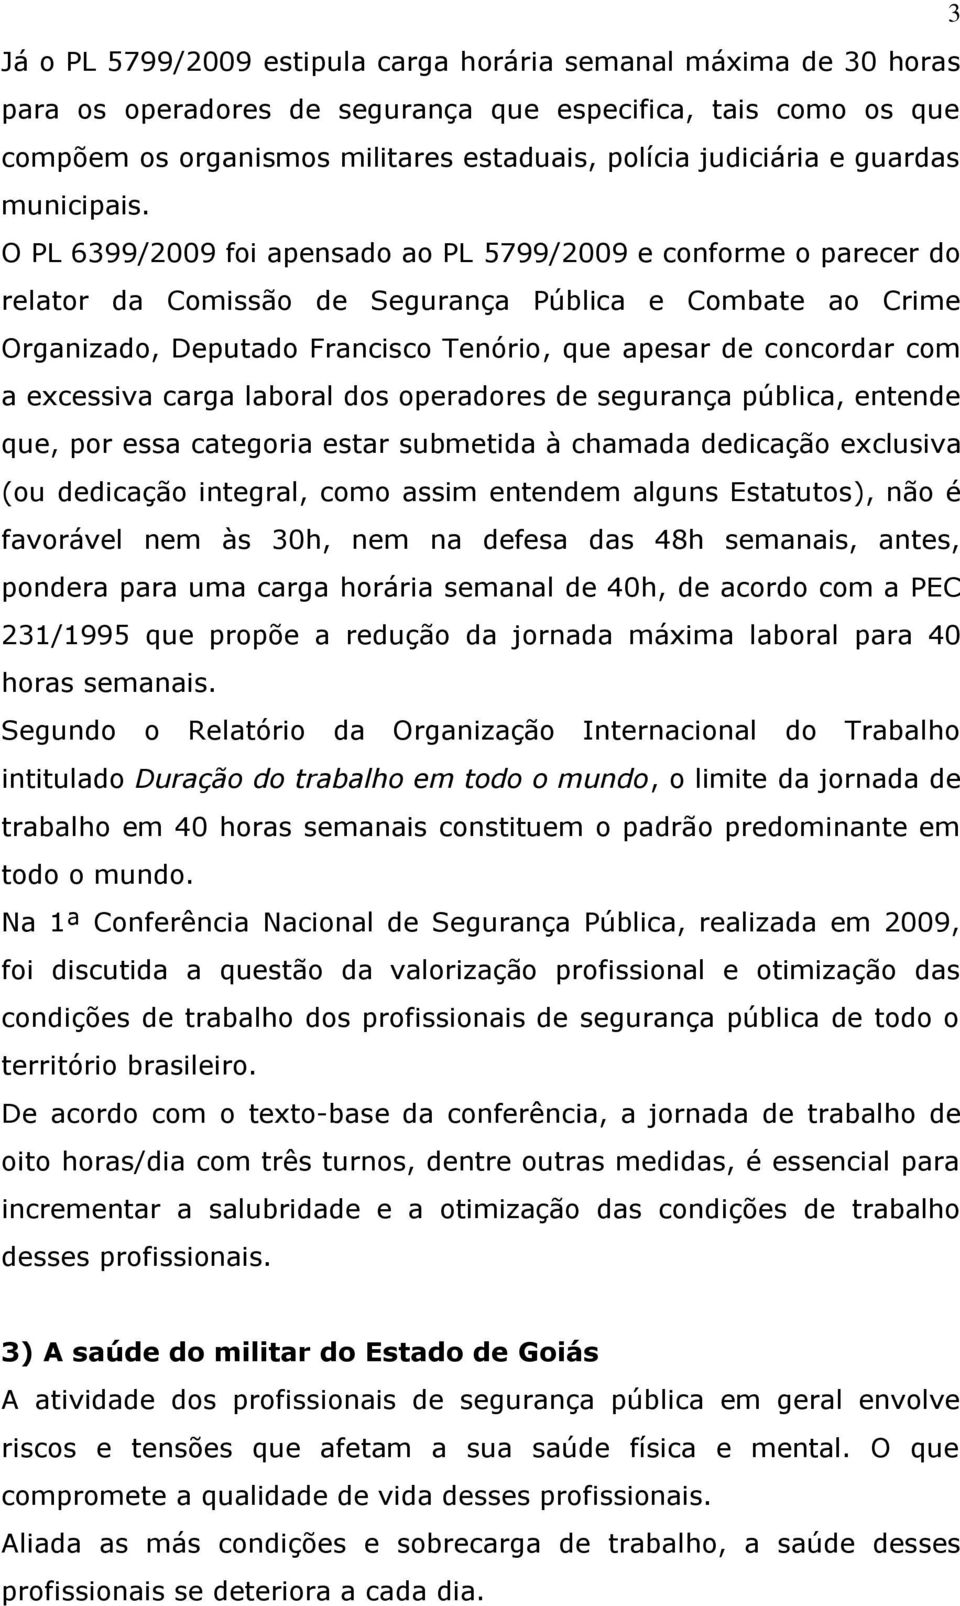 O PL 6399/2009 foi apensado ao PL 5799/2009 e conforme o parecer do relator da Comissão de Segurança Pública e Combate ao Crime Organizado, Deputado Francisco Tenório, que apesar de concordar com a